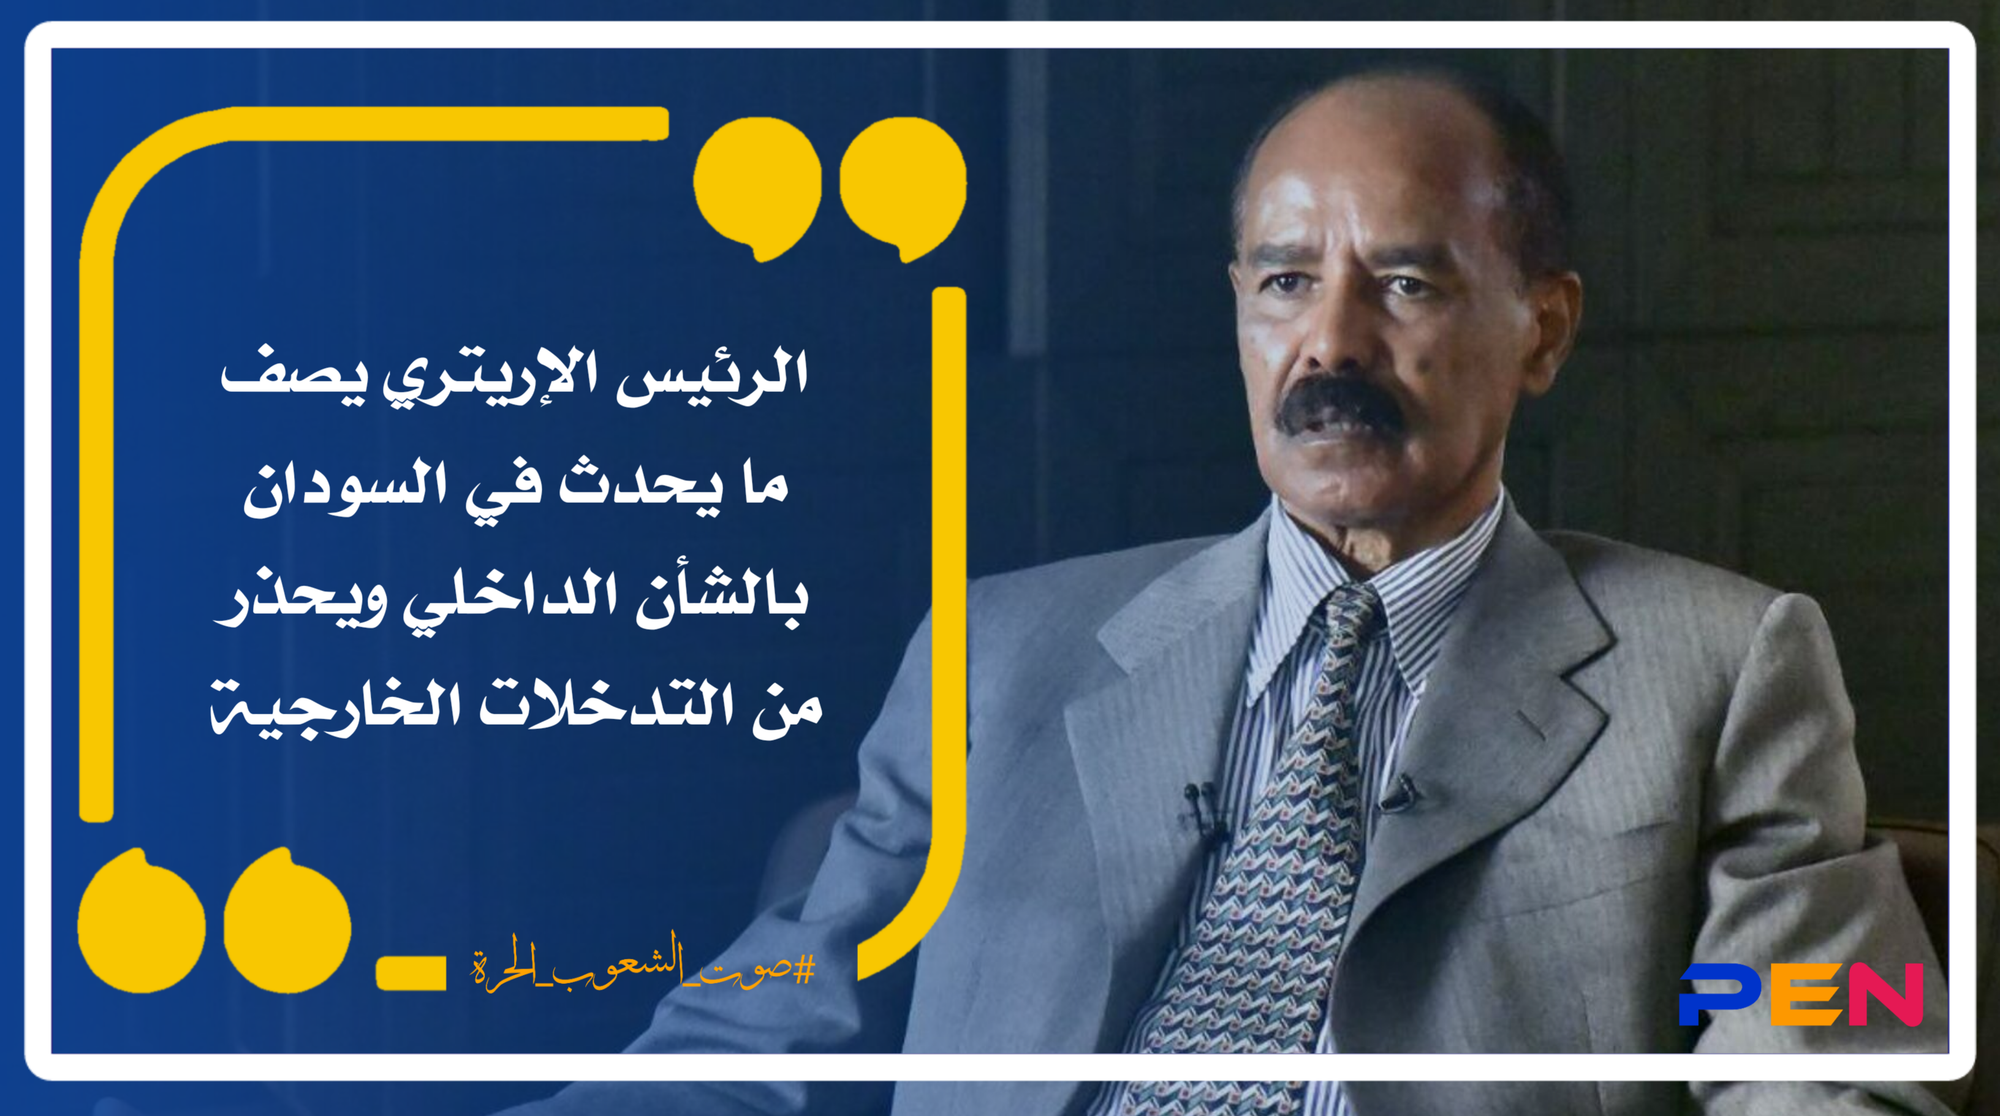 الرئيس الإريتري يصف ما يحدث في السودان بالشأن الداخلي ويحذر من التدخلات الخارجية